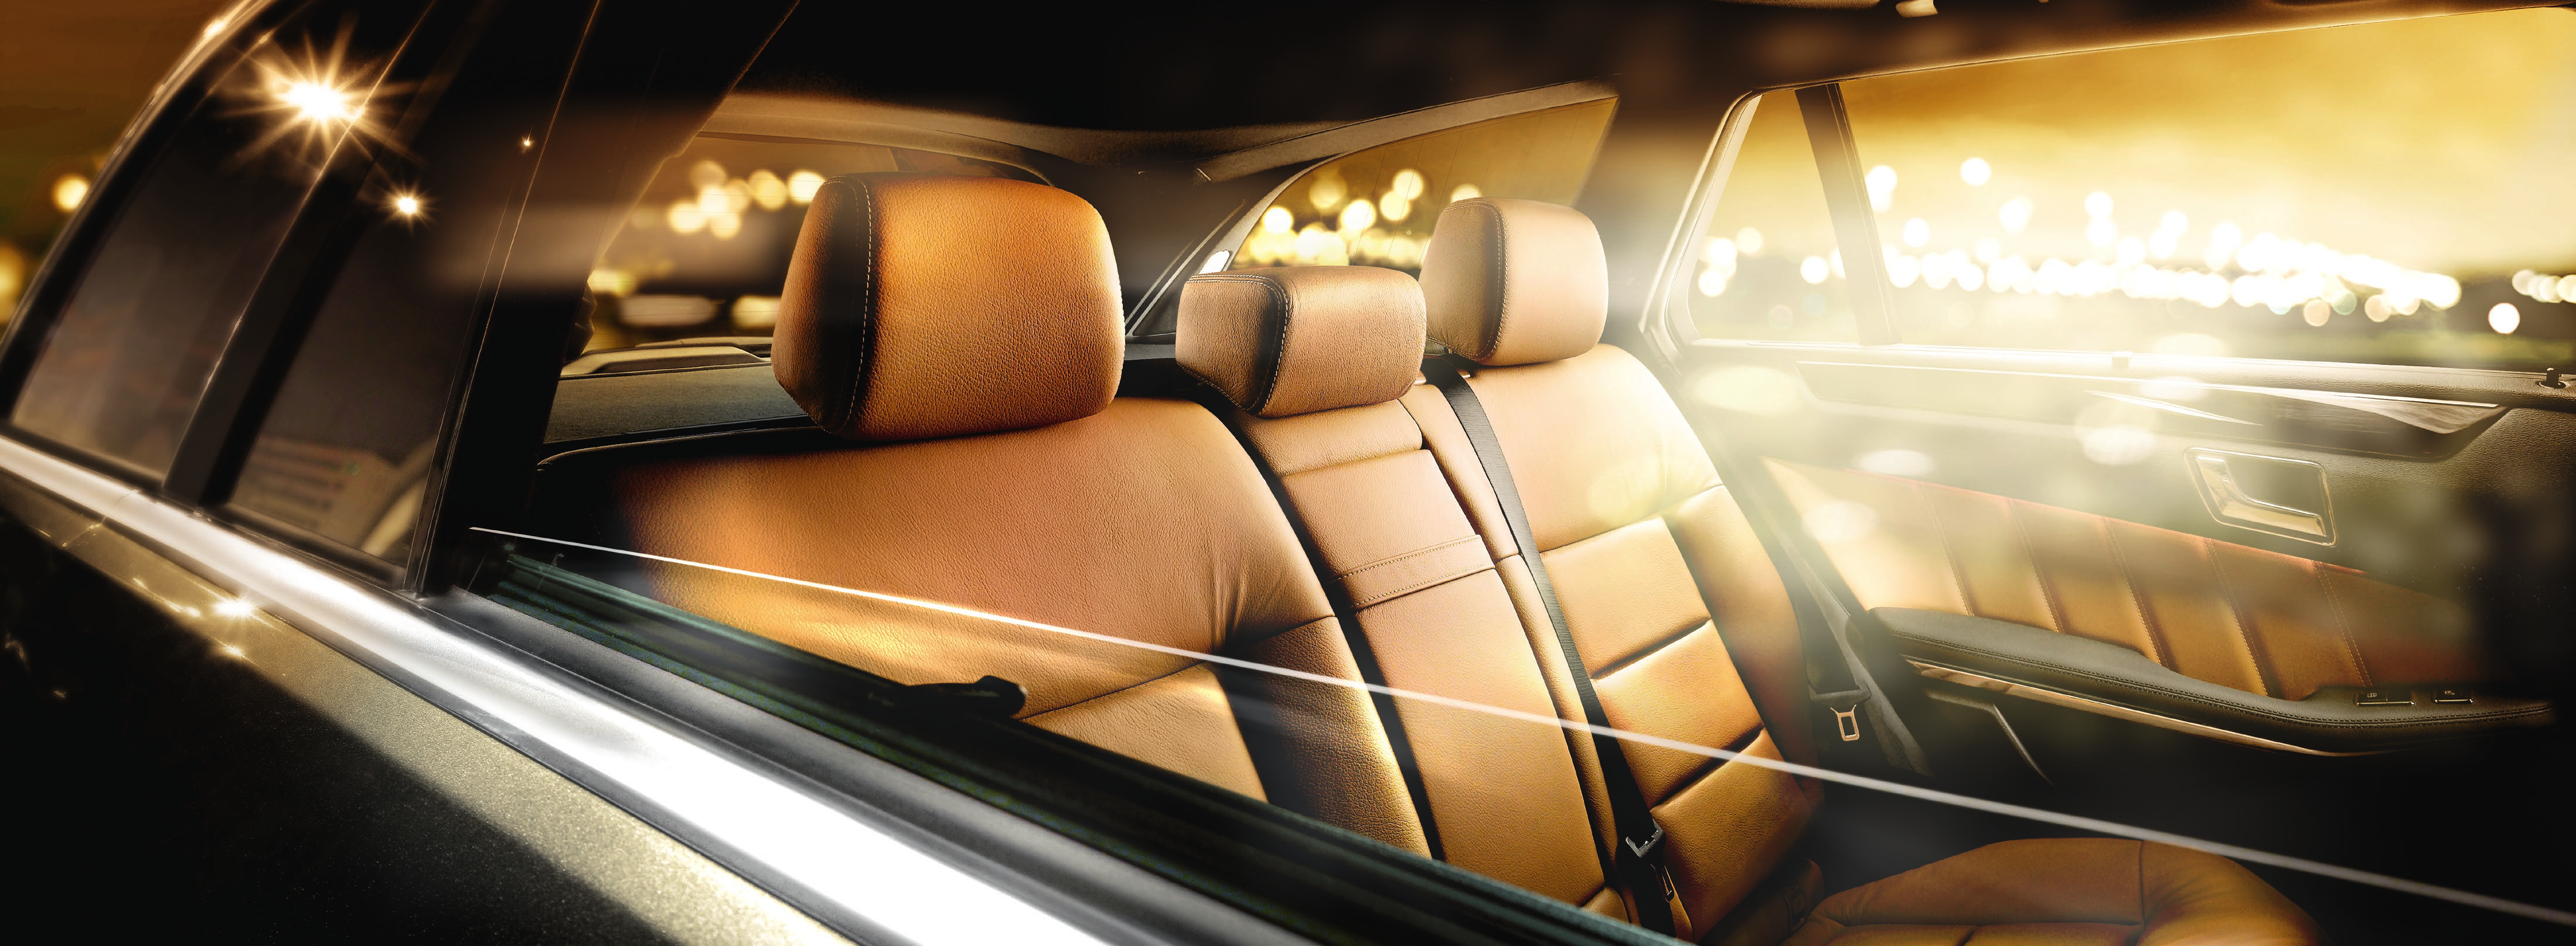 Mercedes-Benz belsőtéri termékek Belül is csúcsformában Mercedesének utasterét magas minőségű anyagok borítják.